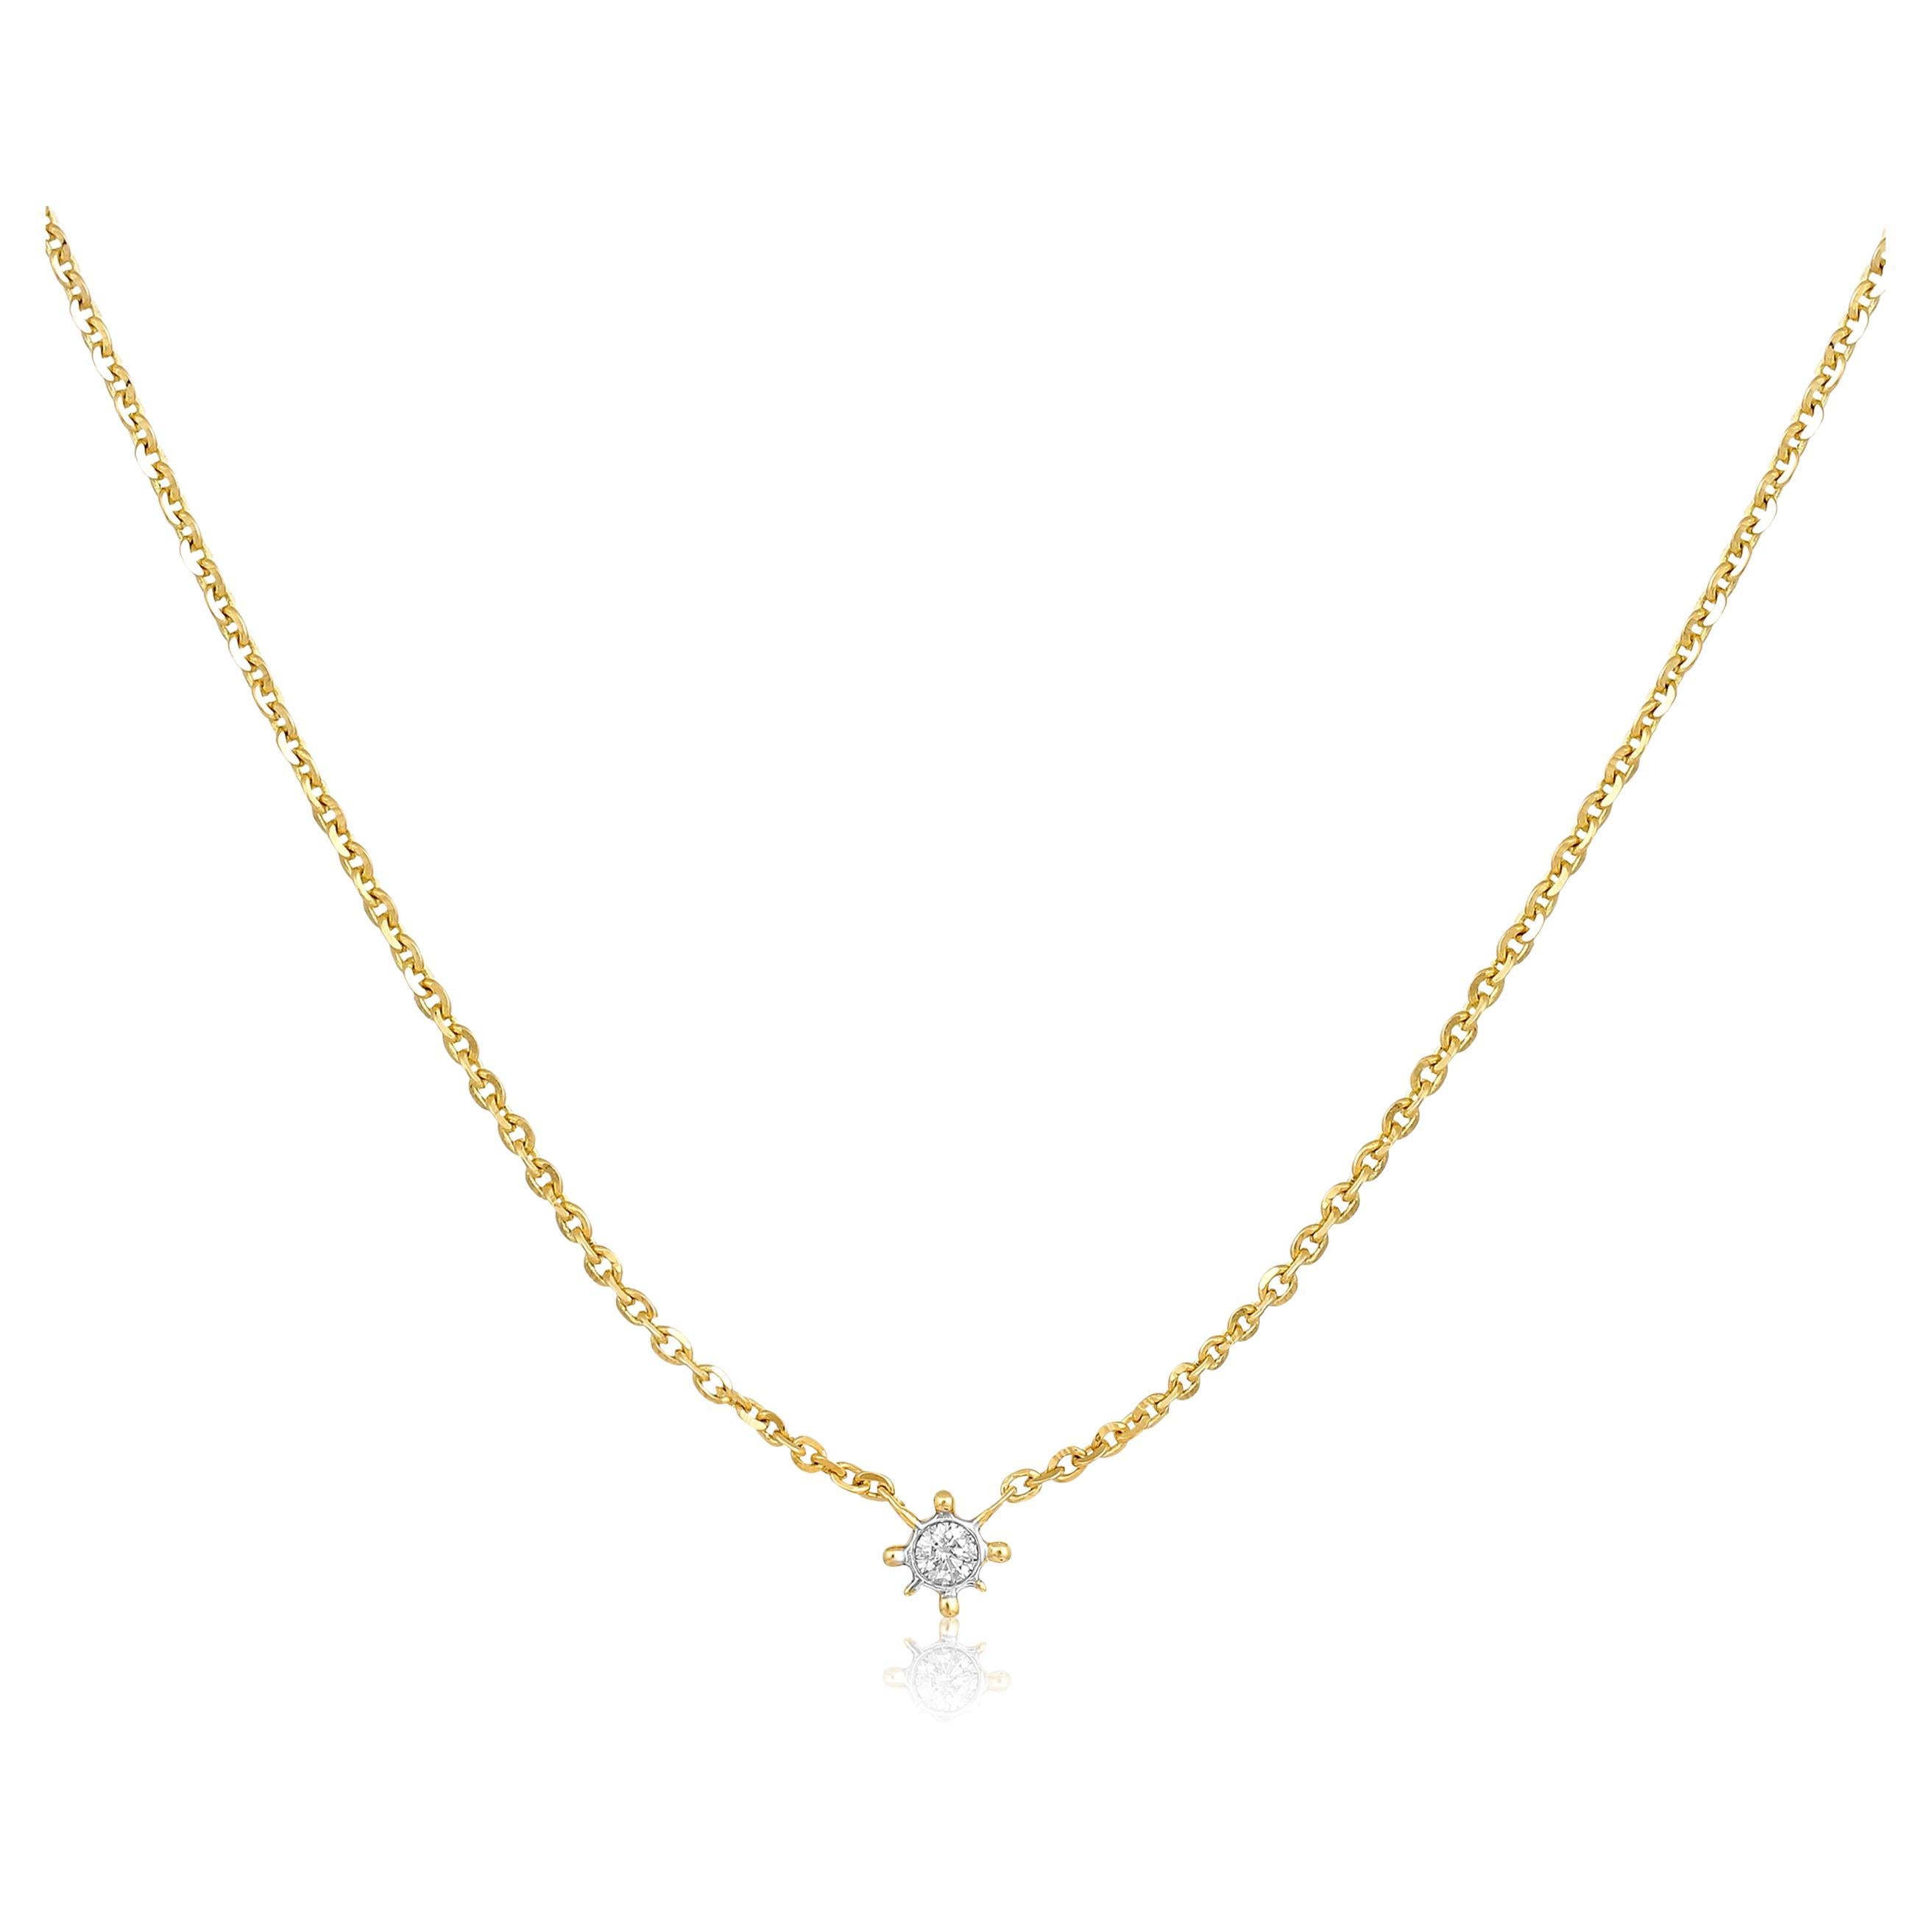 Halskette, zertifiziert 14k Gold 0,04 Karat natürlicher Diamant, zarte, kleine Single Star